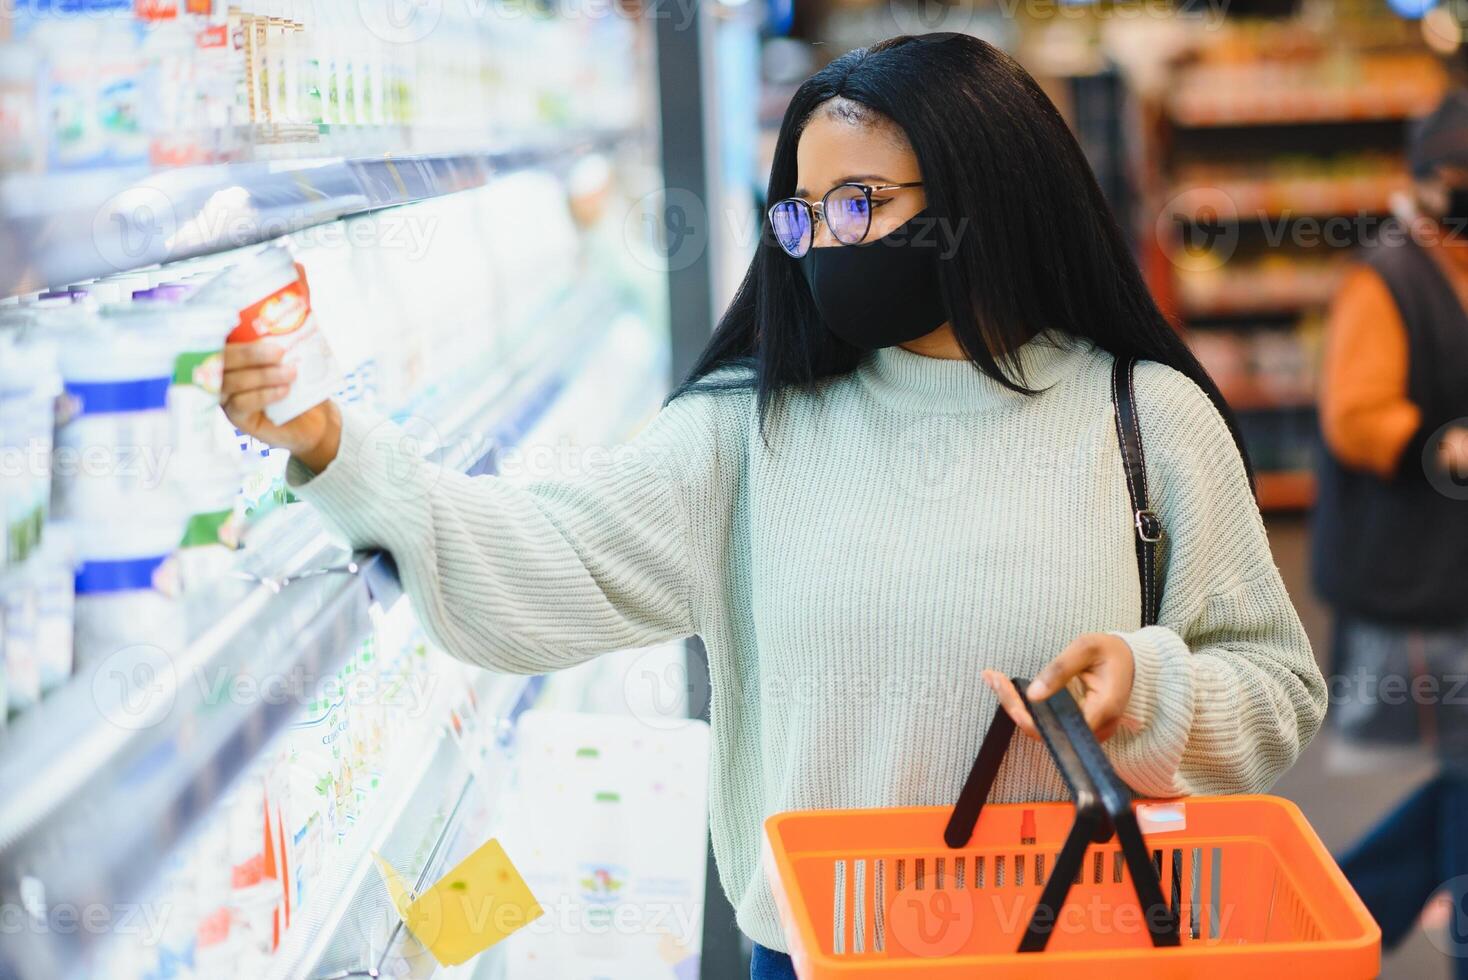 africain femme portant jetable médical masque. achats dans supermarché pendant coronavirus pandémie épidémie. épidémie temps photo